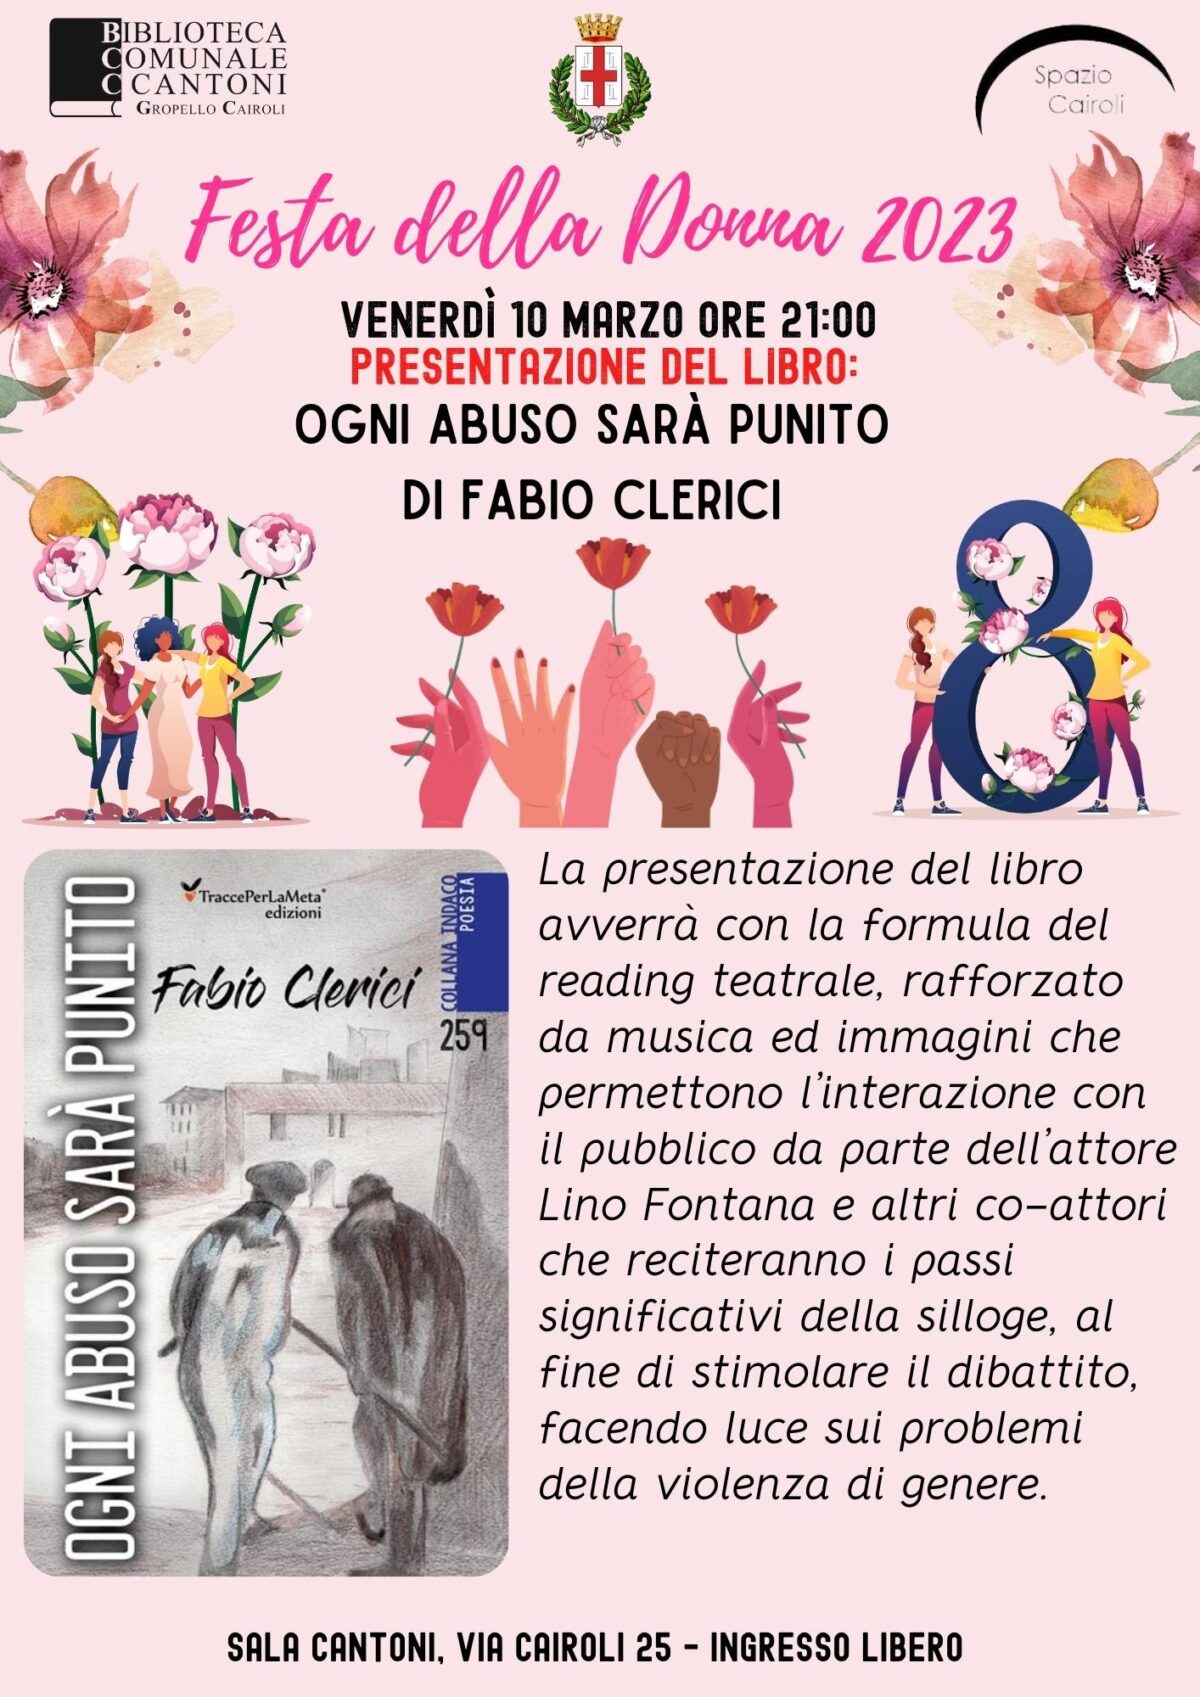 Biblioteca: venerdì 10 marzo ore 21,00 recital e presentazione del libro “Ogni abuso sarà punito” di Fabio Clerici per la Festa della Donna 2023